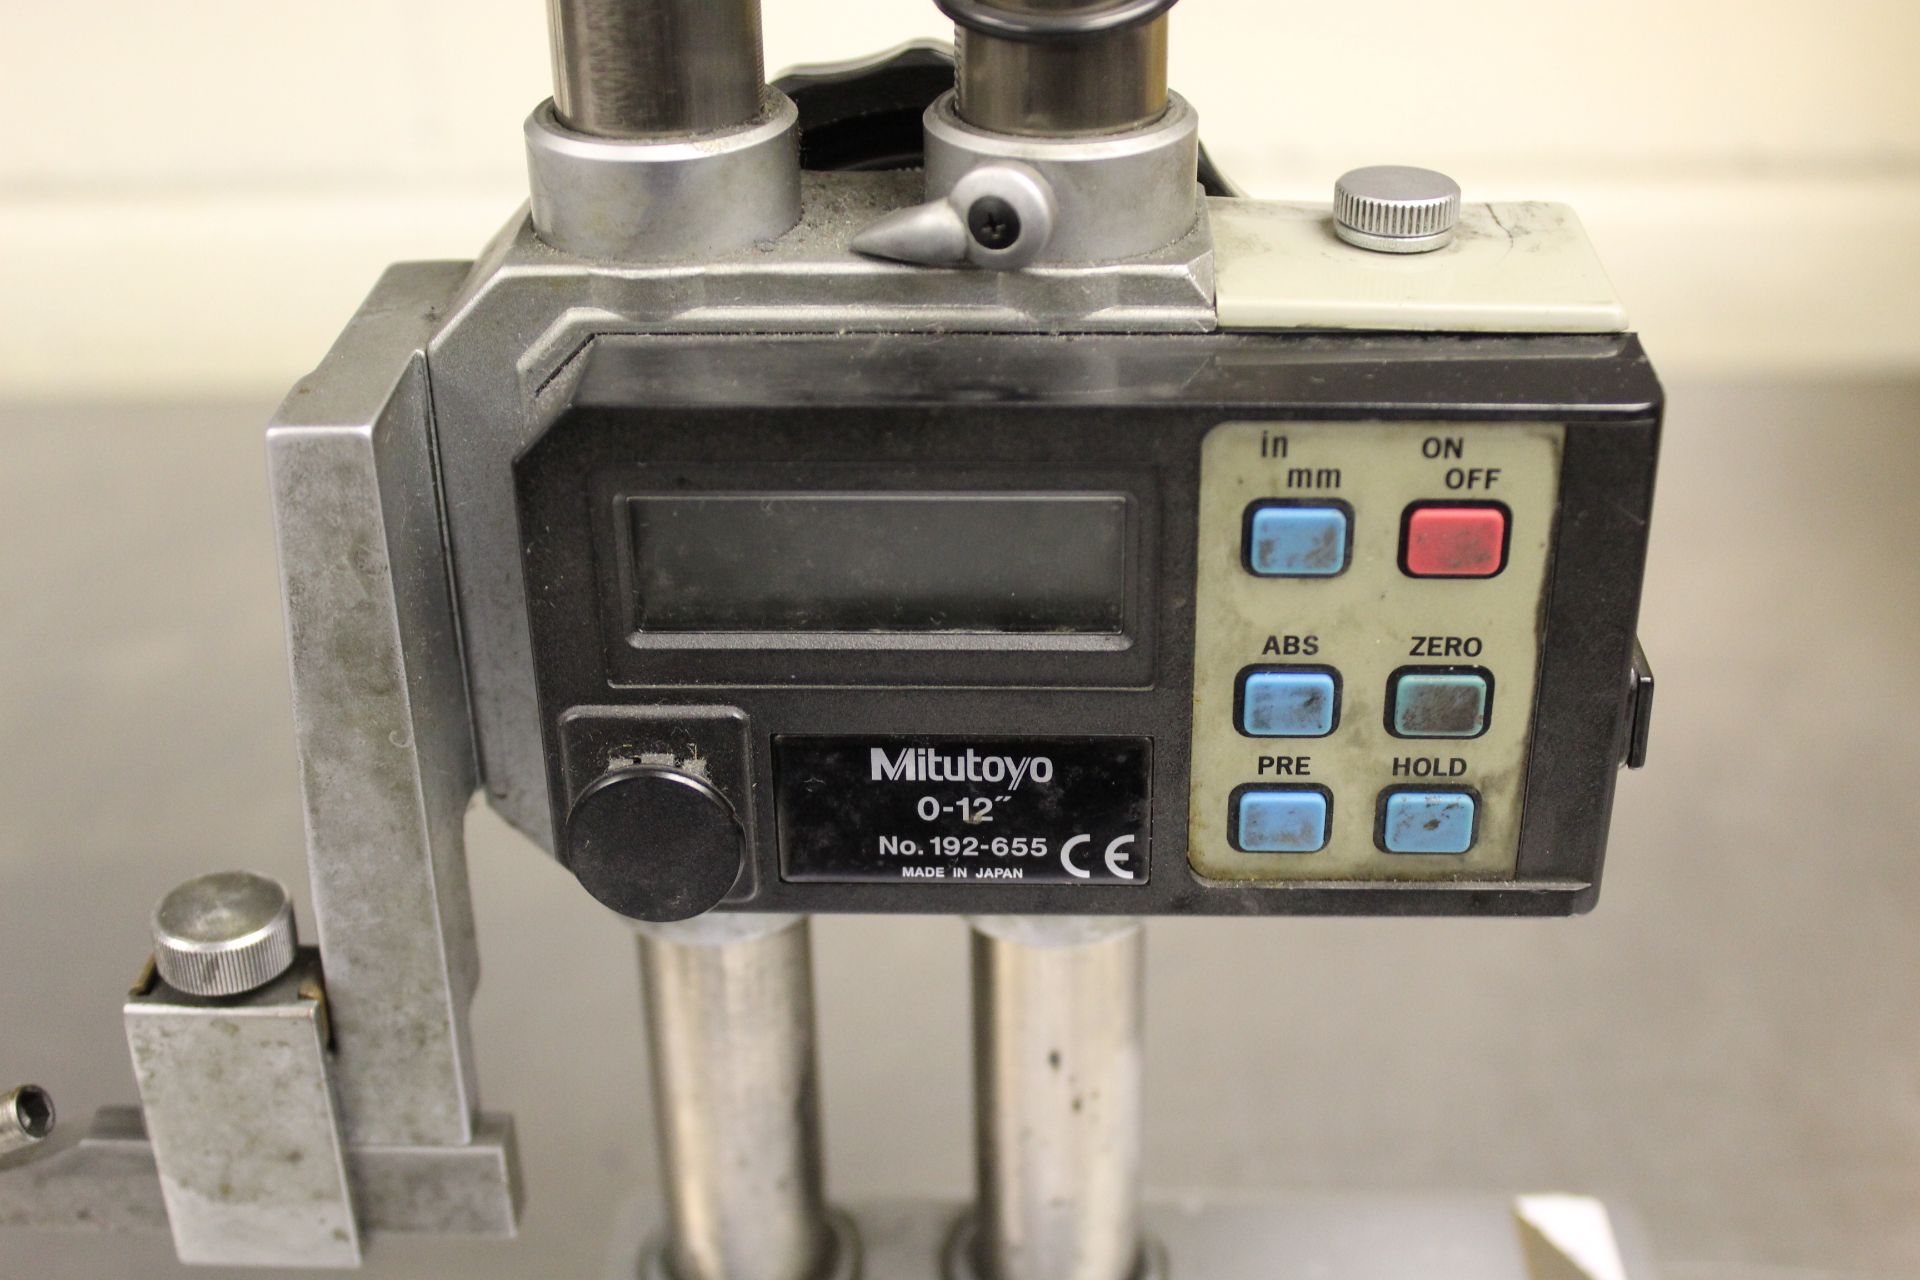 Mitutoyo 0 - 12" digital height gauge, Serial No. 192-655 - Image 2 of 2